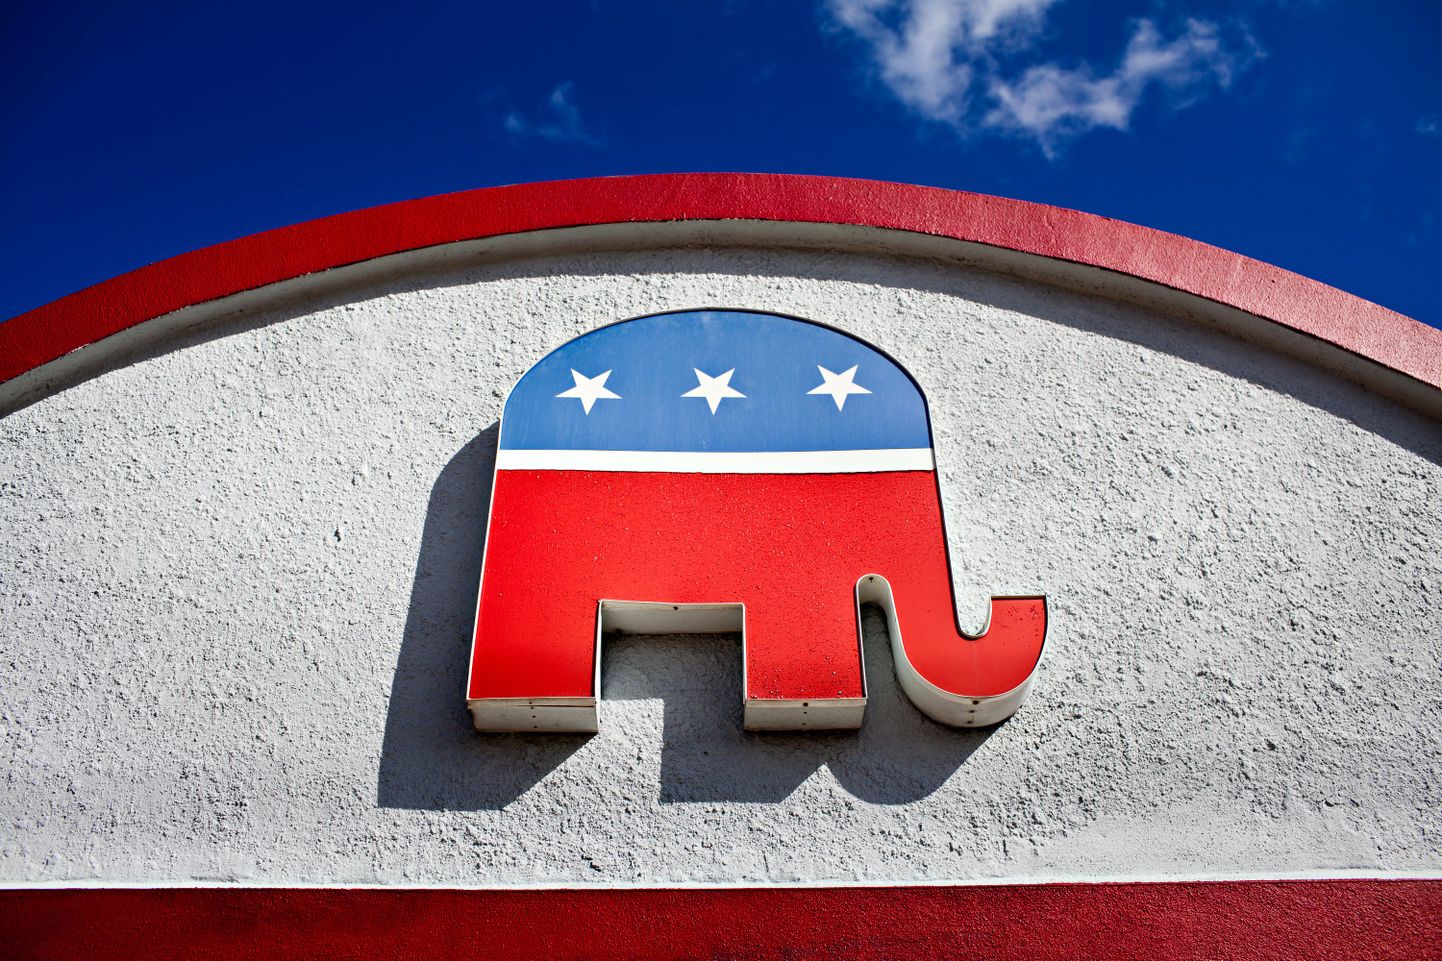 Vabariiklaste partei sümboliks on juba alates 1874. aastast olnud elevant. 1874. aastal kujutati vabariiklaste parteid ühel karikatuuril elevandina ja sellest ajast on parteid seostatud just selle loomaga. Elevant sümboliseerib tugevust ja väärikust.